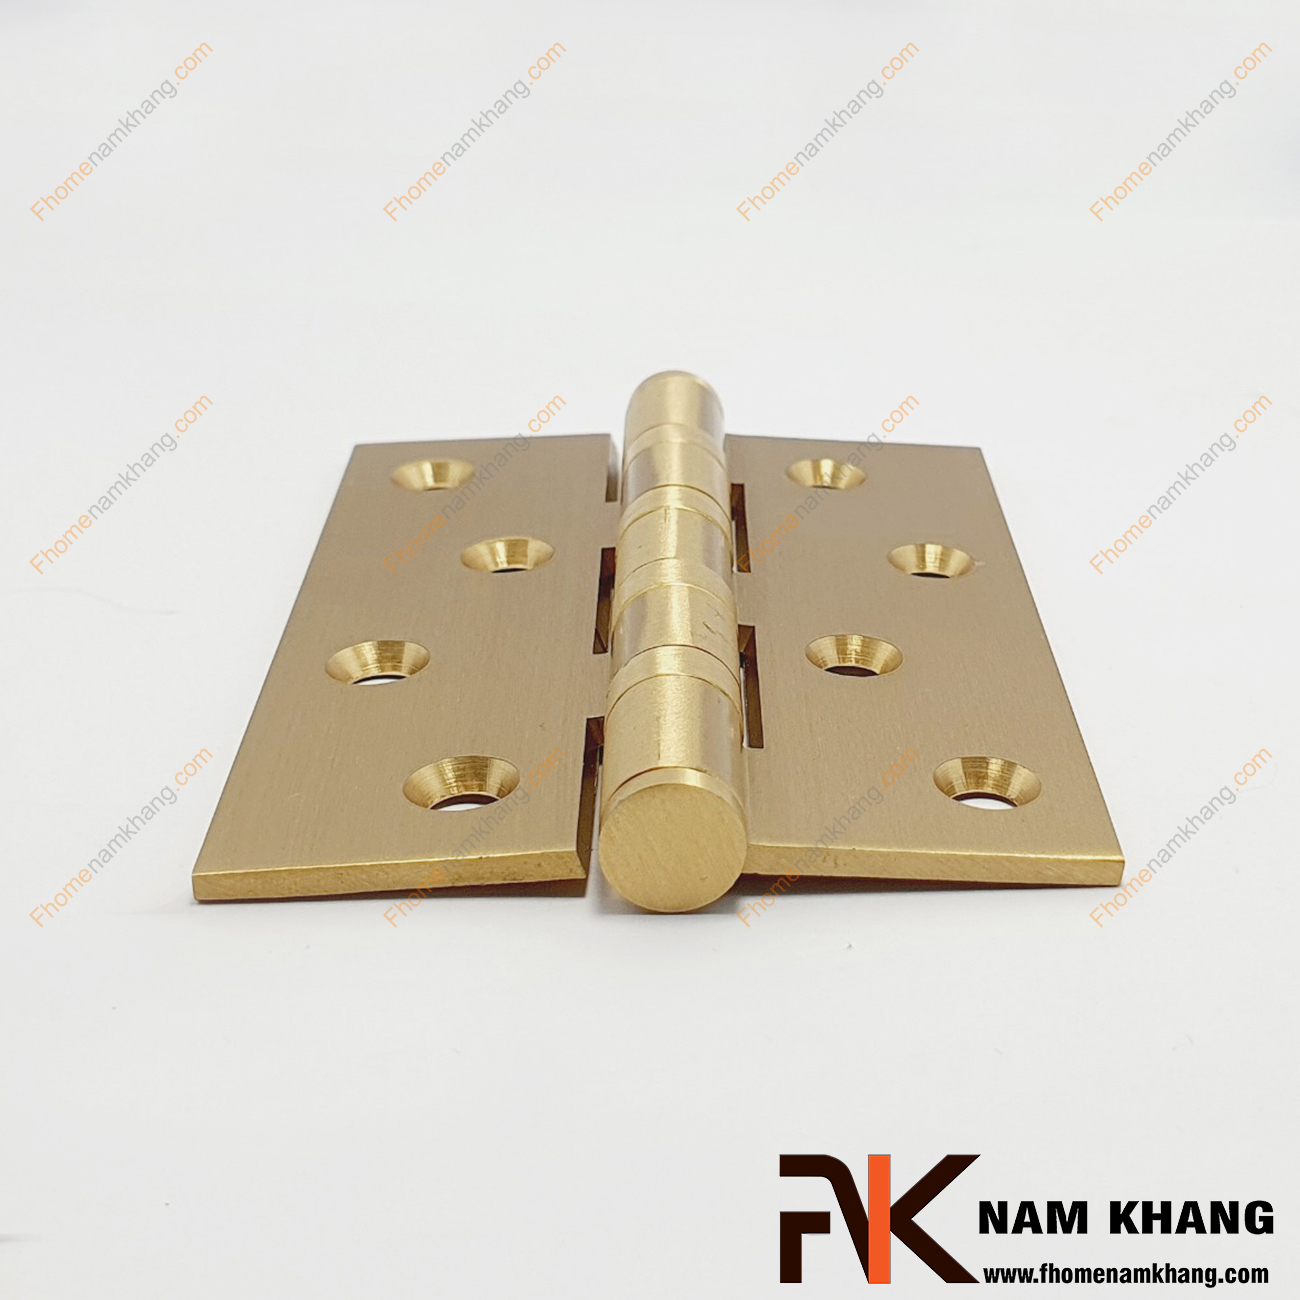 Bản lề lá bằng đồng cao cấp màu vàng NK308-10-4DO là phụ kiện không thể thiếu của cánh cửa, được cố định vào một nơi cho phép cánh cửa quay với một góc rộng nhất định.